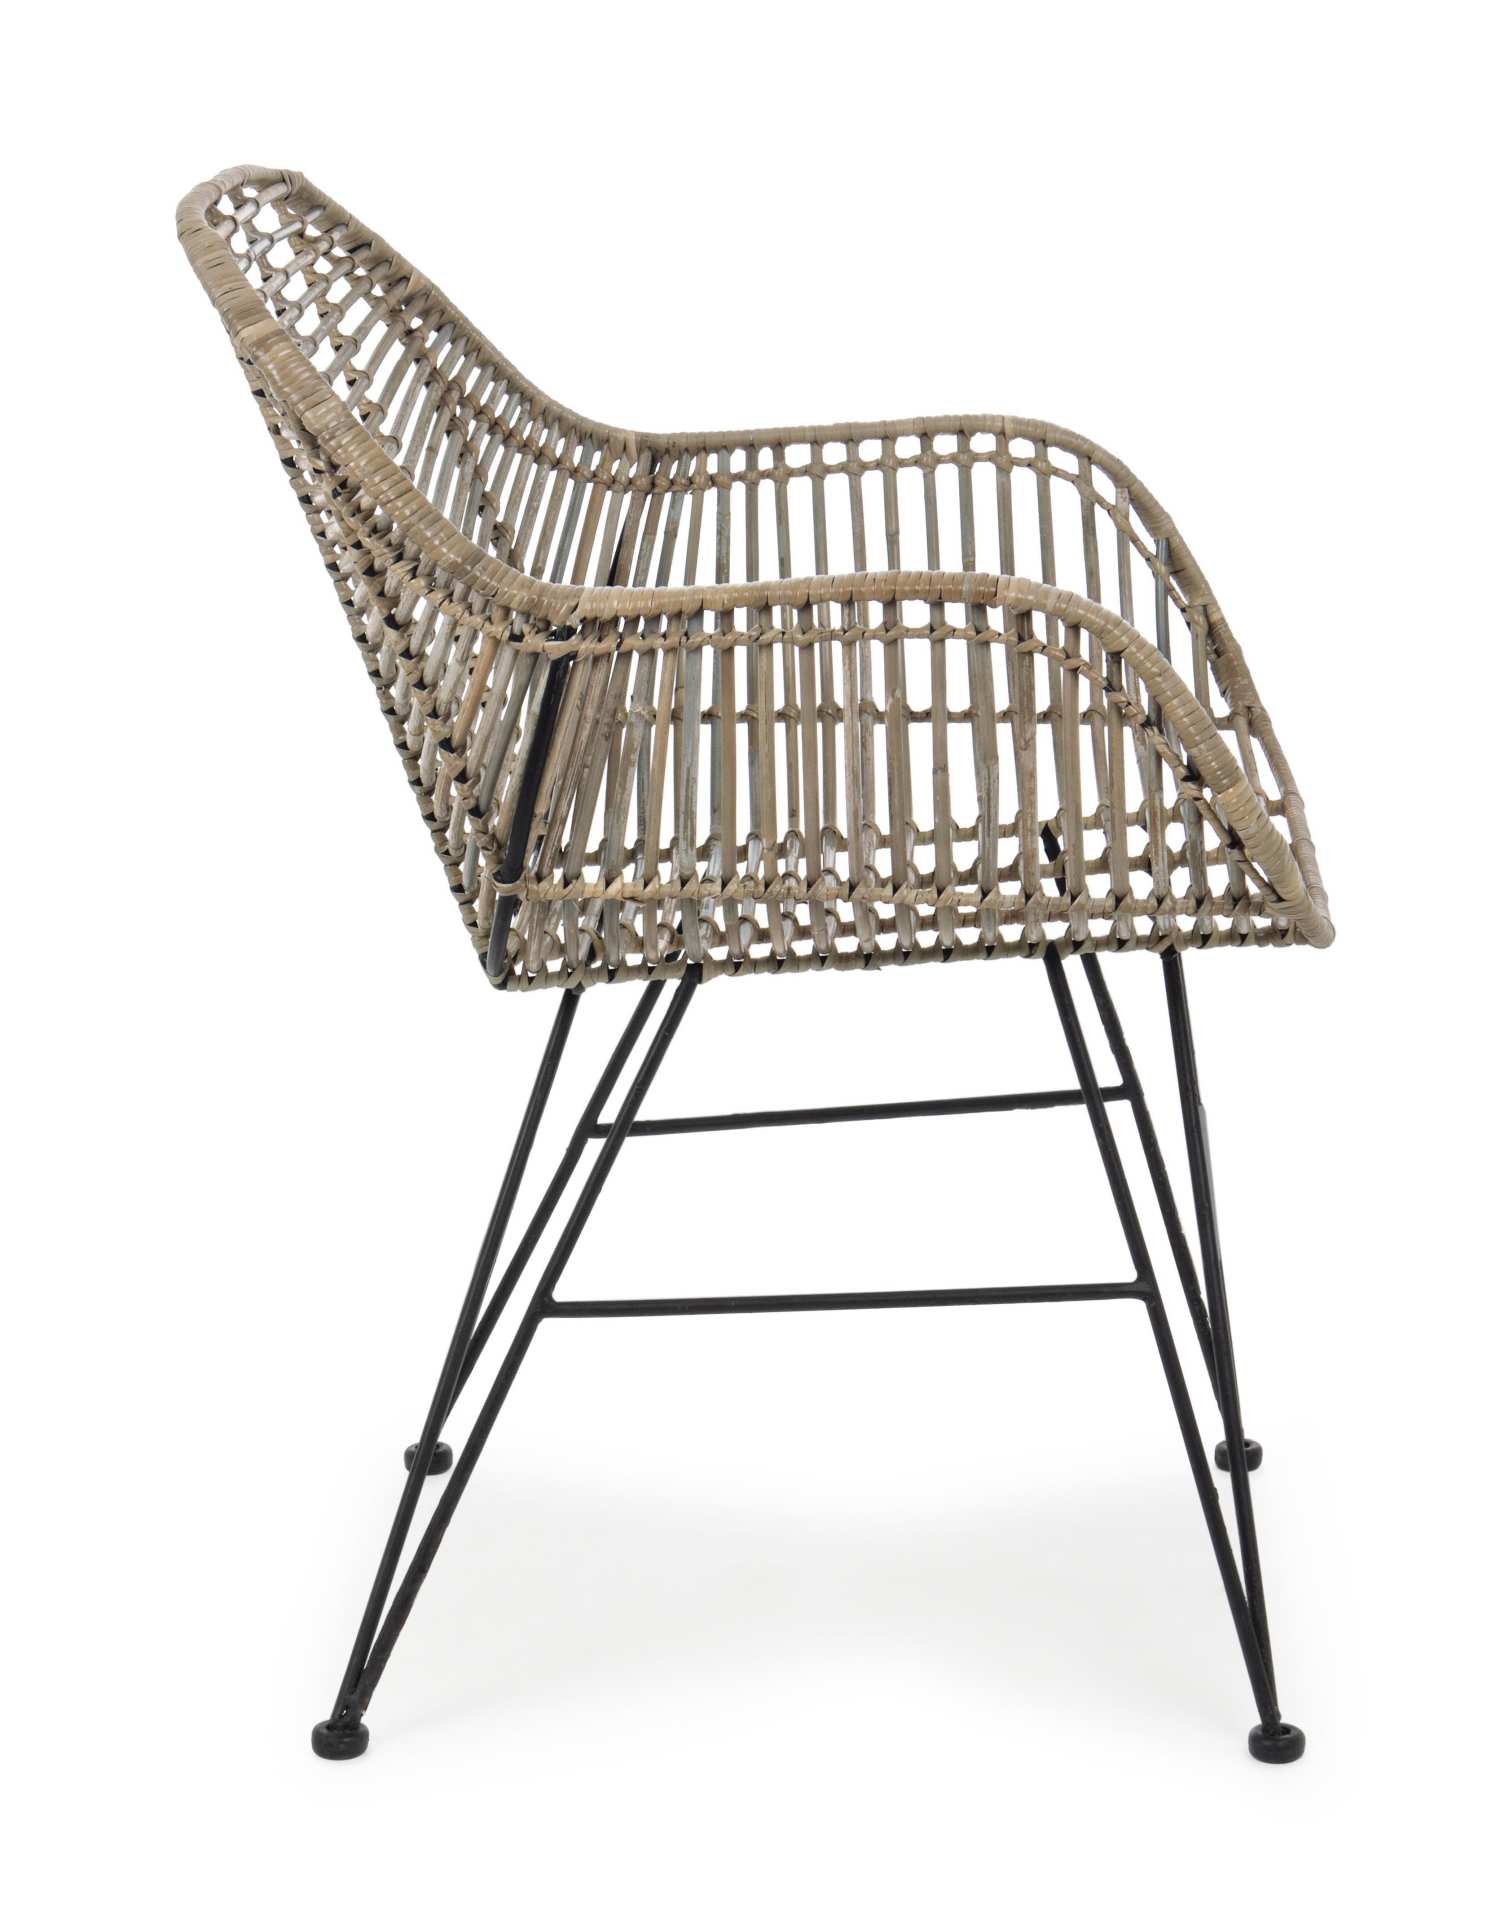 Der Stuhl Raquel überzeugt mit seinem modernem Design. Gefertigt wurde der Stuhl aus einem Kabu-Geflecht, welches einen natürliche Farbton besitzt. Das Gestell ist aus Metall und ist Schwarz. Die Sitzhöhe beträgt 45 cm.